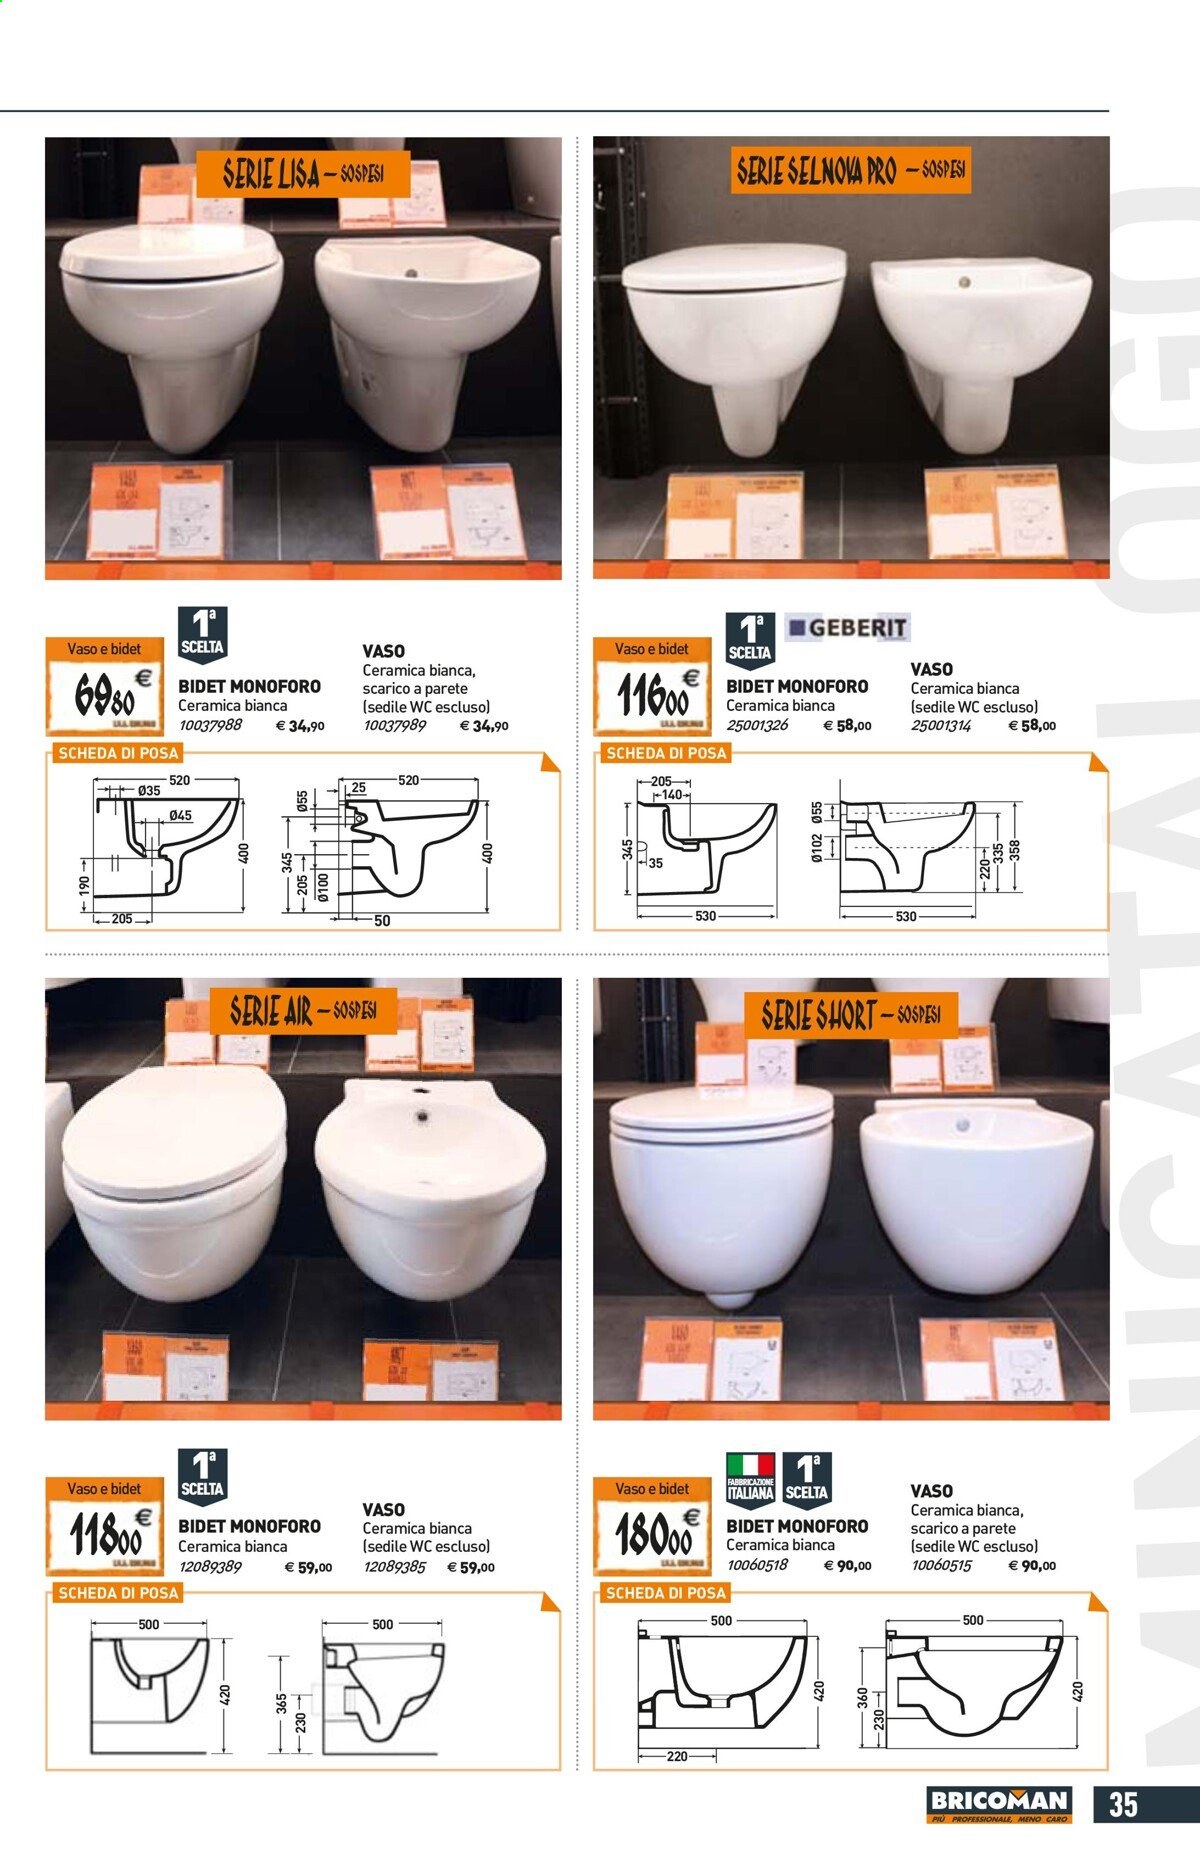 Volantino Bricoman - 24/6/2021 - 28/7/2021 - Prodotti in offerta - bidet monoforo, sedile WC, vaso, bidet, vaso in ceramica. Pagina 35.